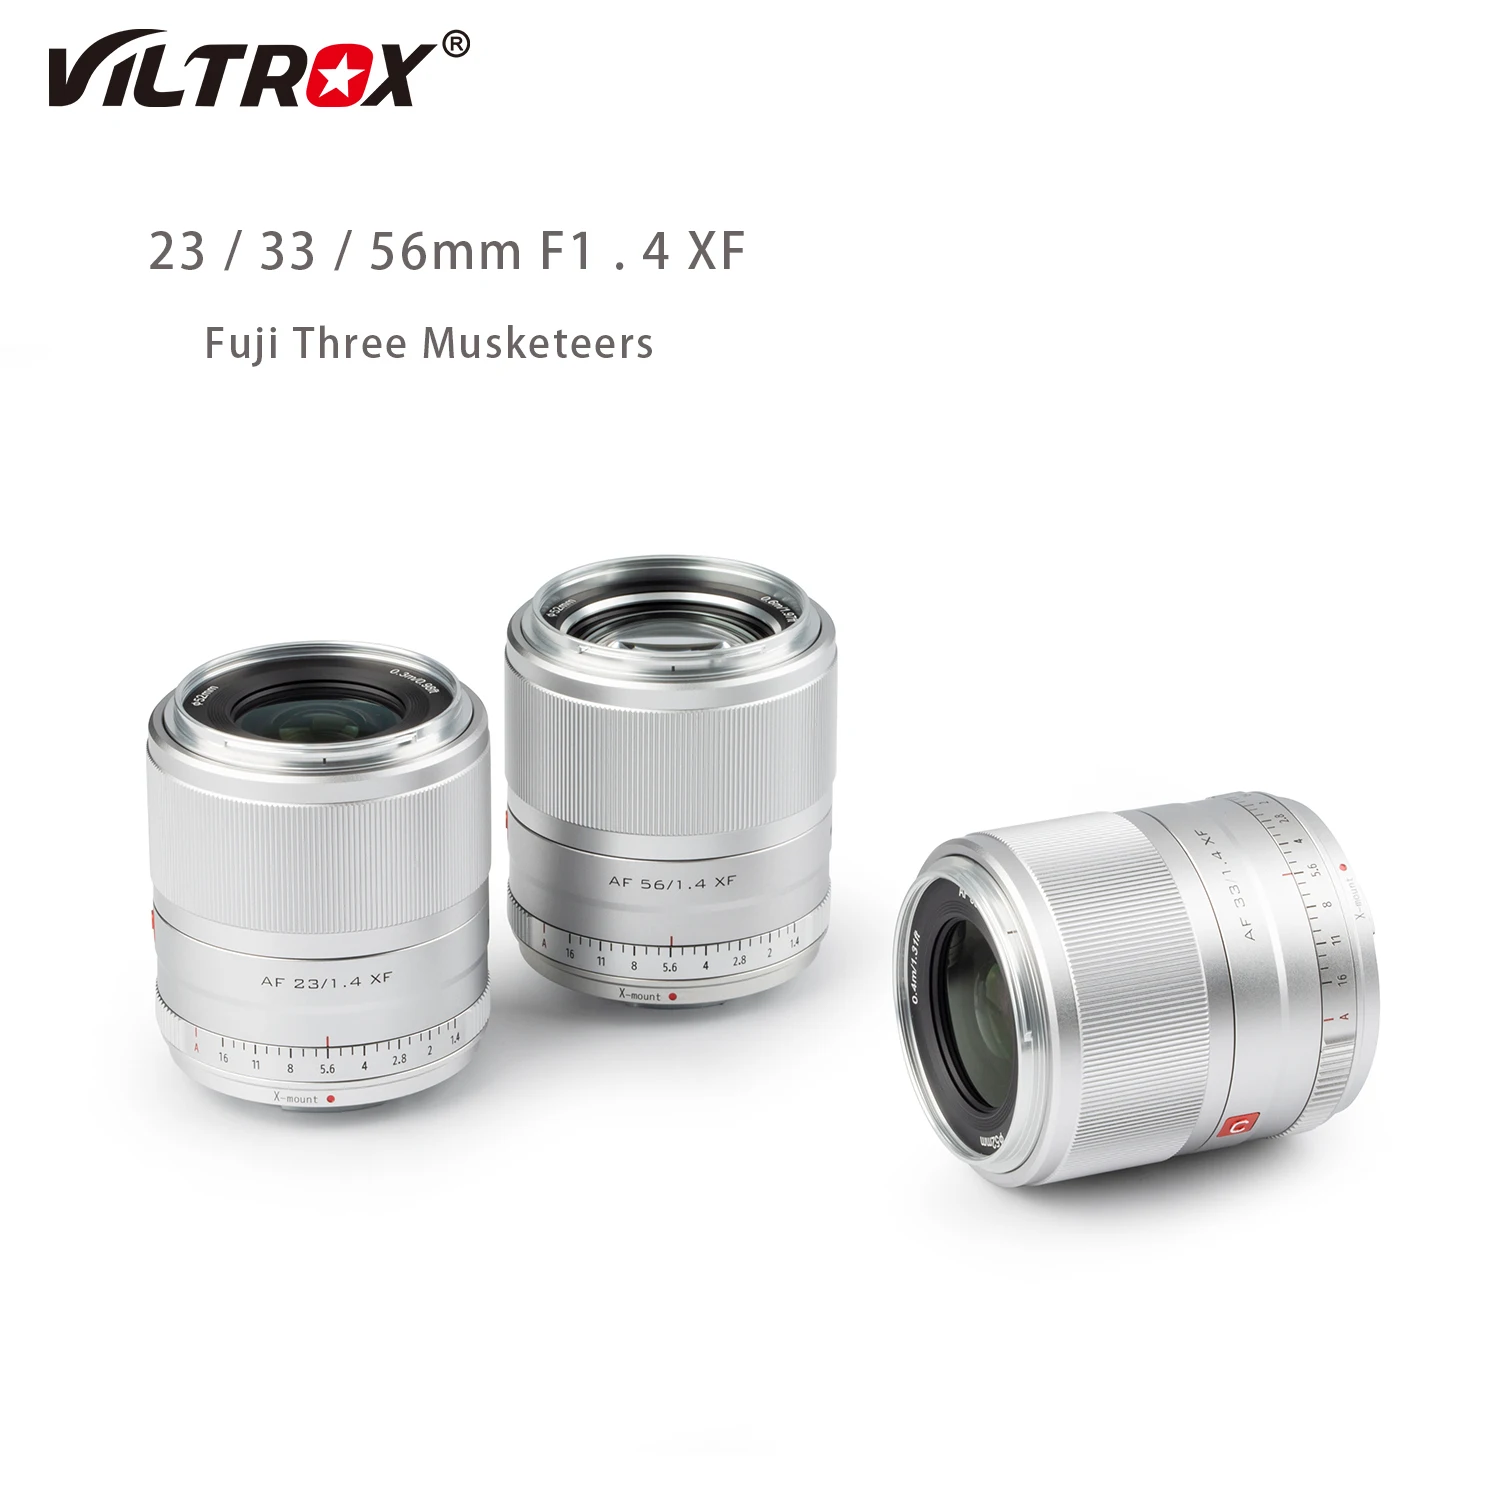 

Объектив VILTROX 23 мм F1.4 AF с автофокусом, большой объектив с диафрагмой для Fujifilm Fuji, объектив с X-образным креплением для фотоаппарата